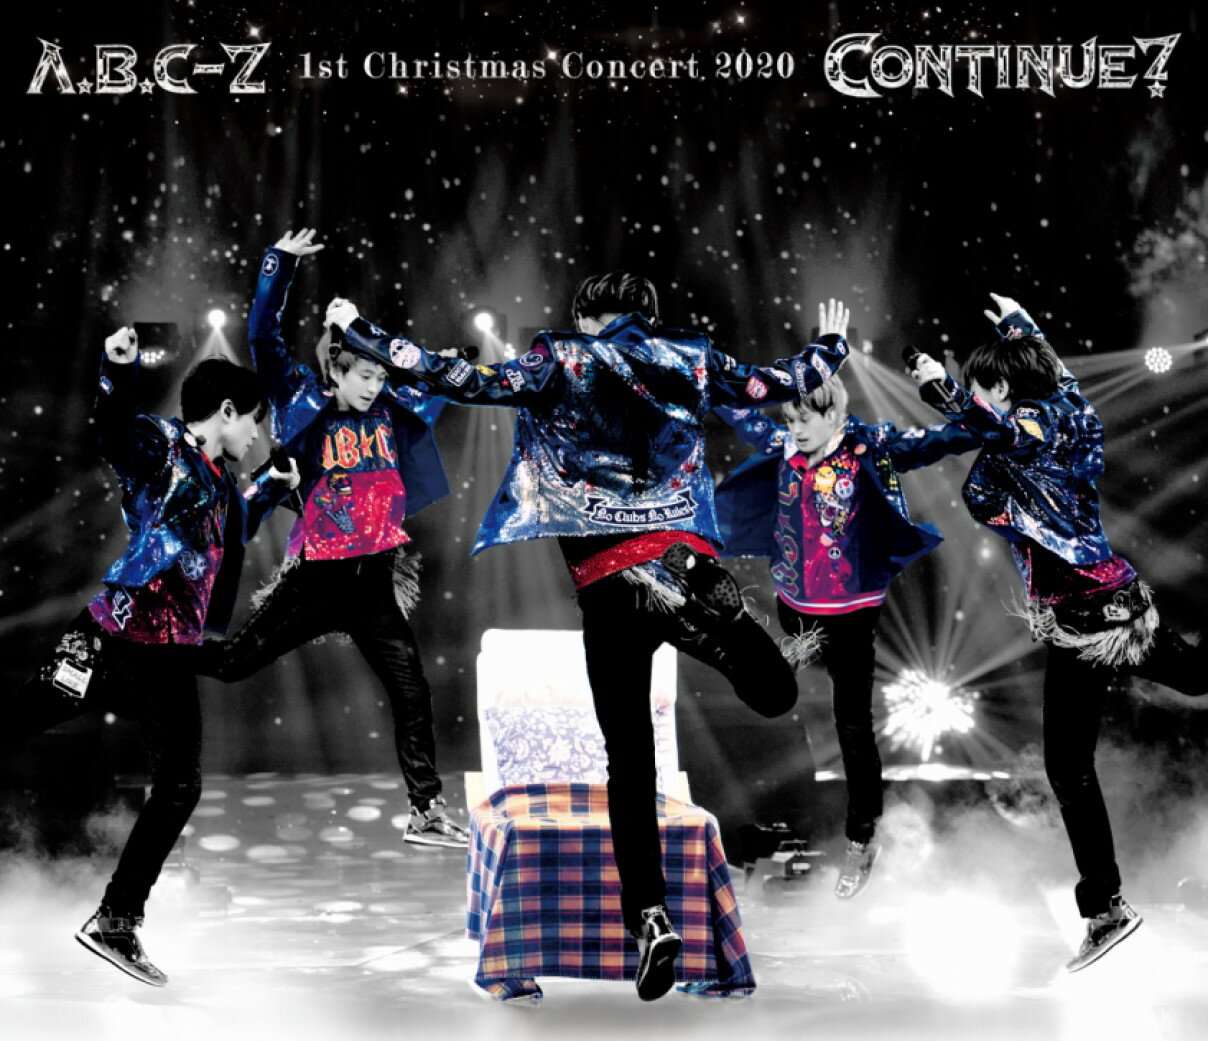 楽天楽天ブックスA.B.C-Z 1st Christmas Concert 2020 CONTINUE?（通常盤 Blu-ray）【Blu-ray】 [ A.B.C-Z ]